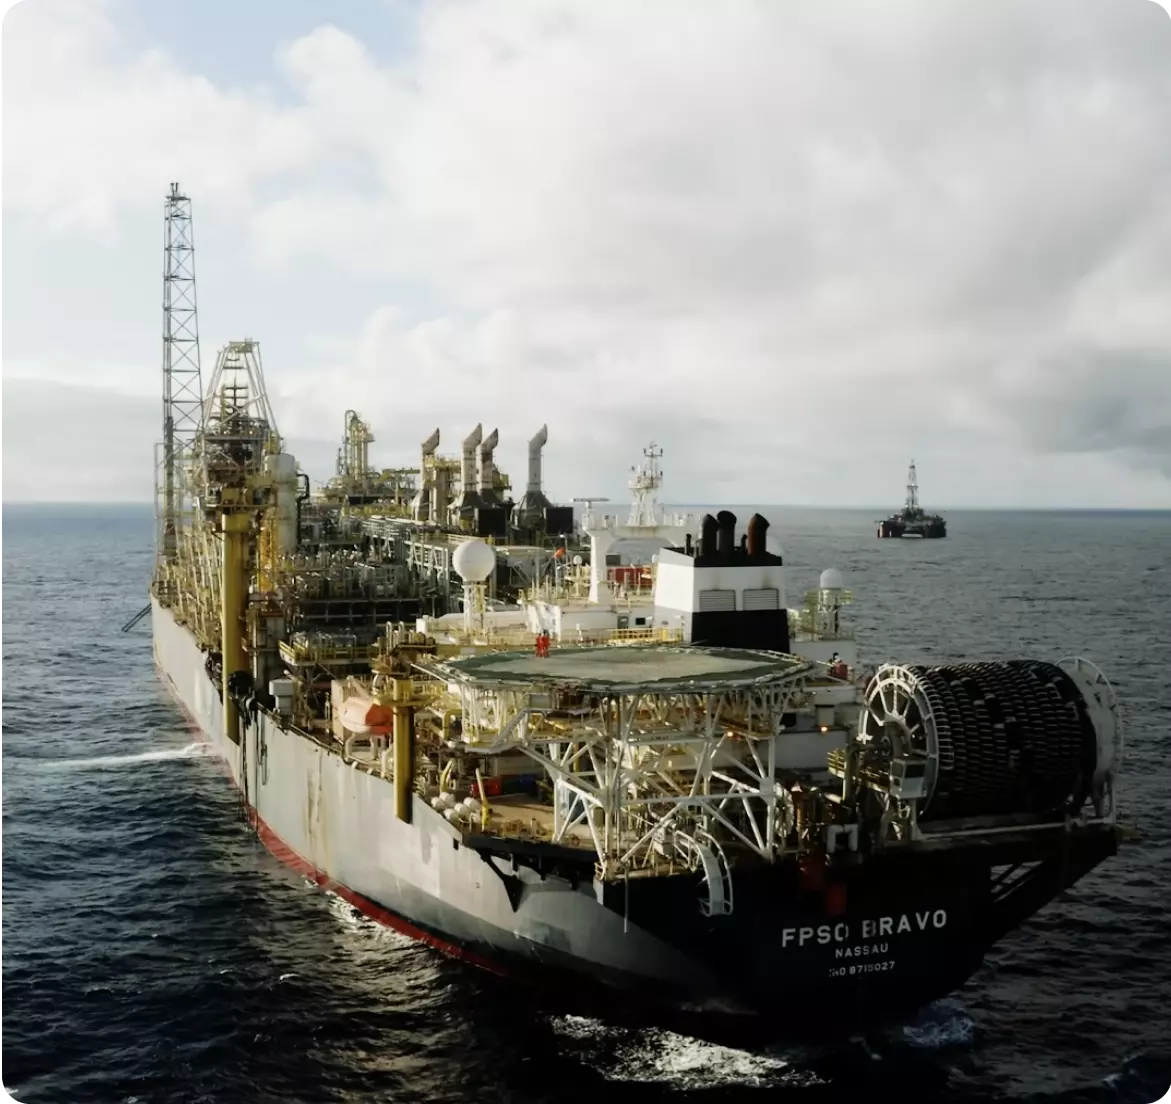 Uma grande plataforma de petróleo no meio do oceano